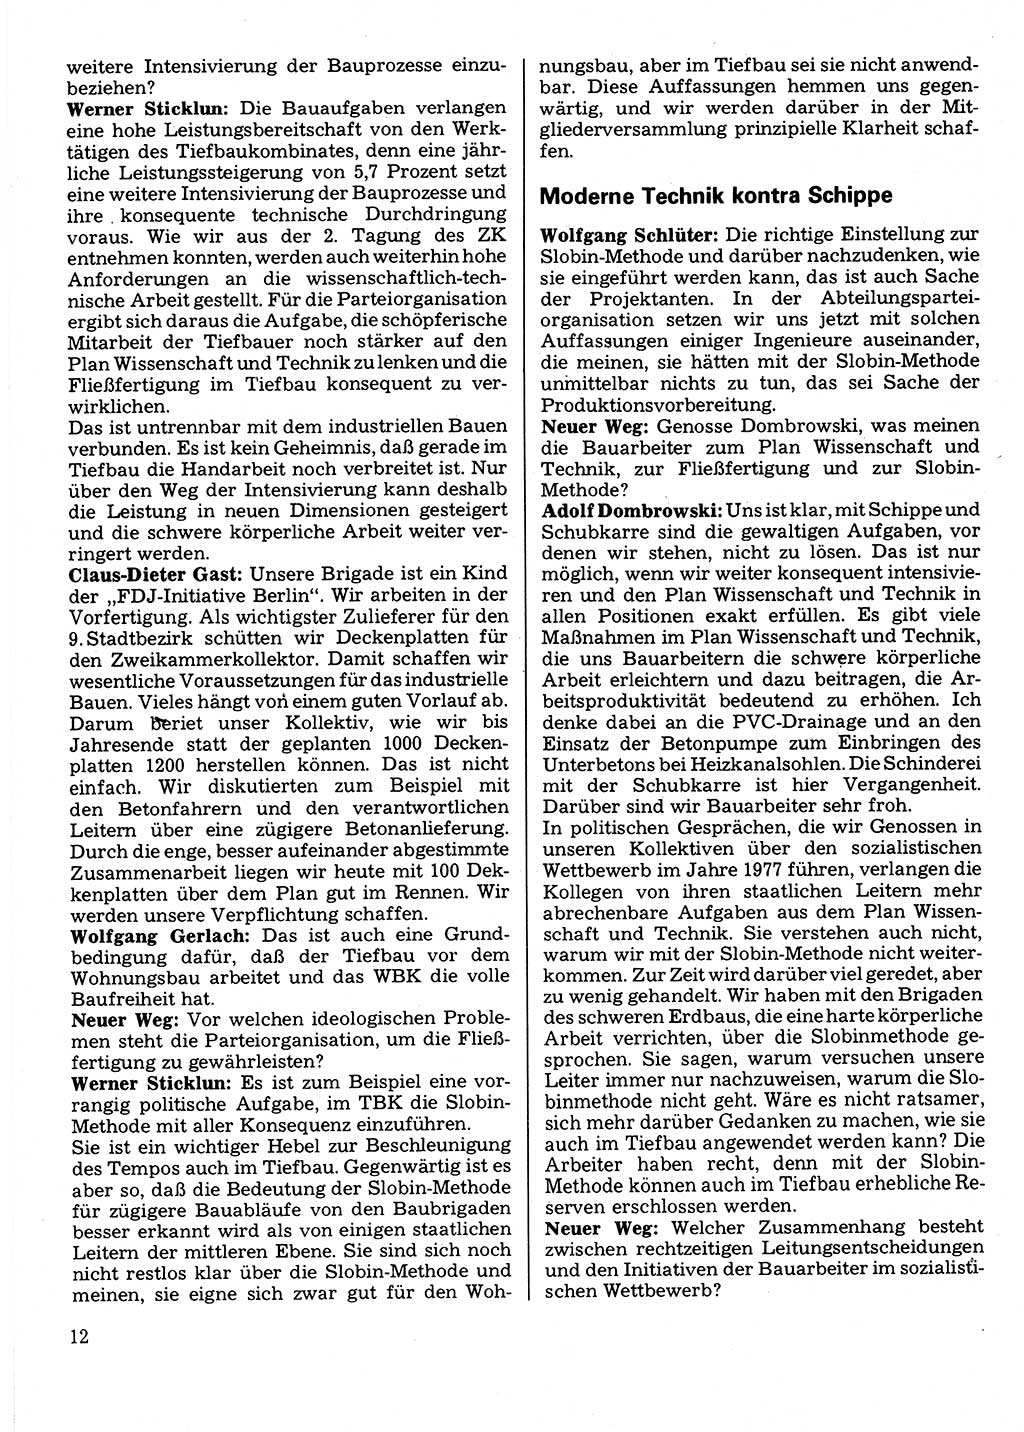 Neuer Weg (NW), Organ des Zentralkomitees (ZK) der SED (Sozialistische Einheitspartei Deutschlands) für Fragen des Parteilebens, 32. Jahrgang [Deutsche Demokratische Republik (DDR)] 1977, Seite 12 (NW ZK SED DDR 1977, S. 12)